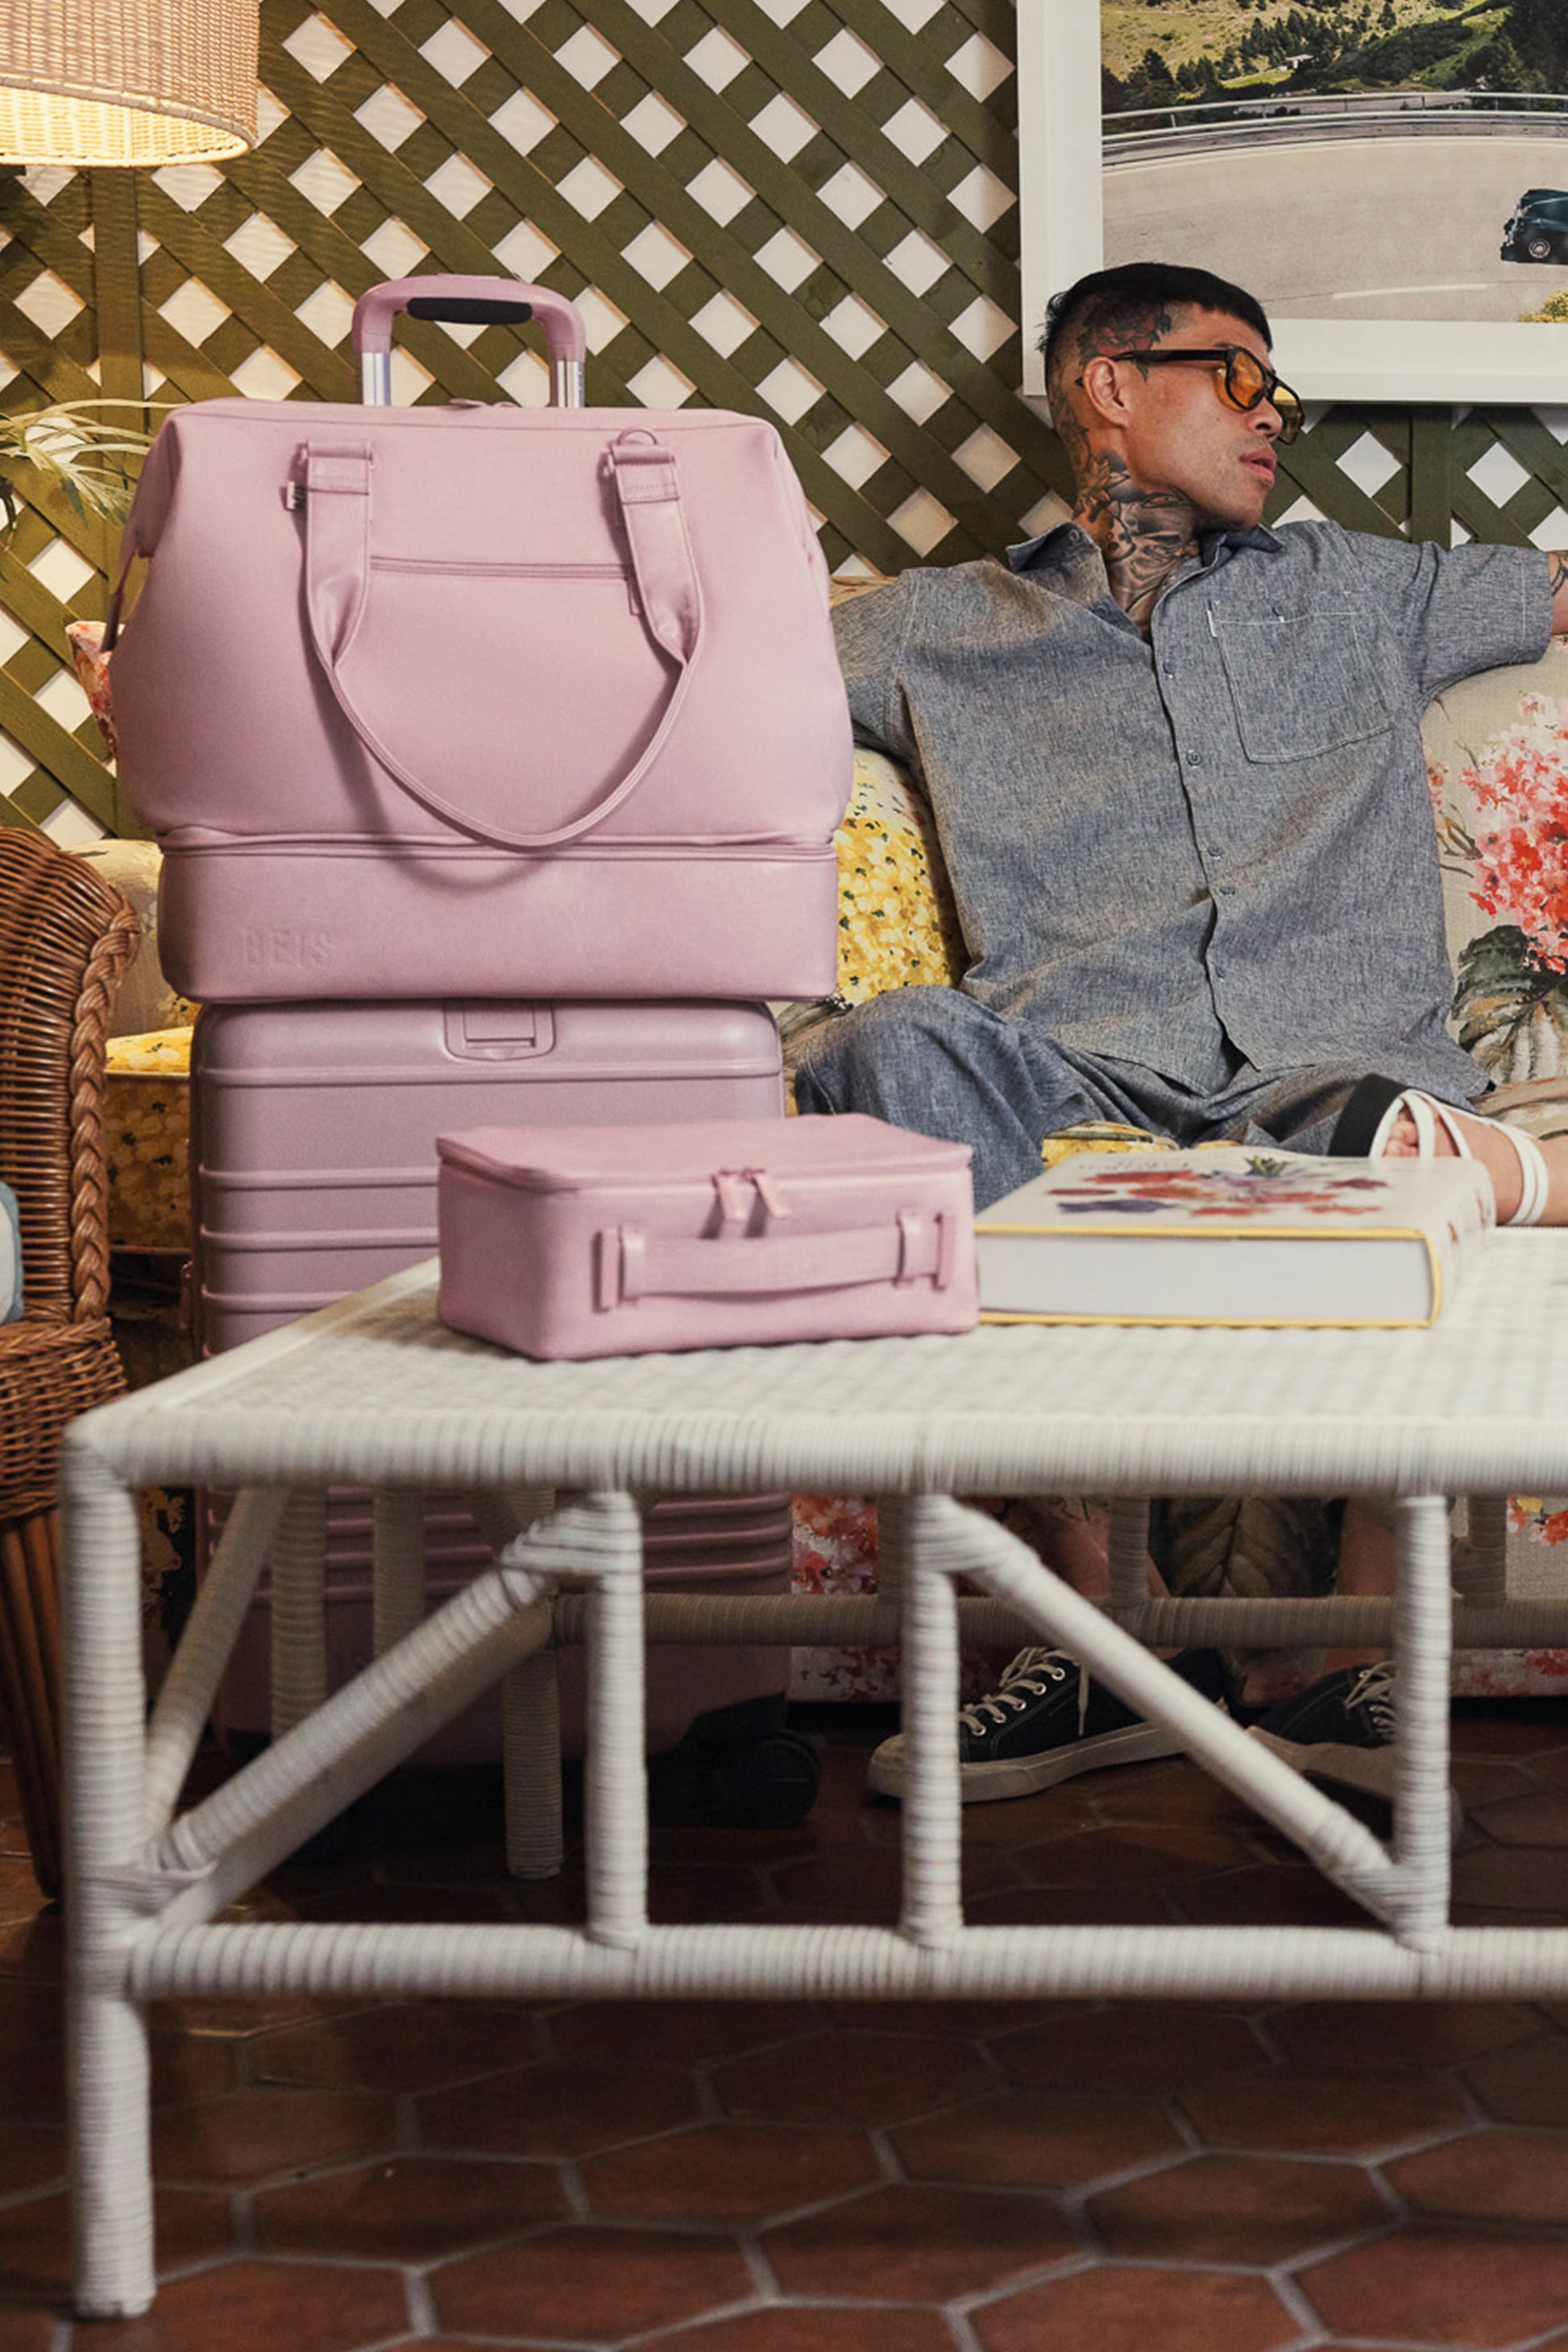 Béis 'The Convertible Mini Weekender' in Atlas Pink - Pink Small Weekend Bag  & Travel Bag